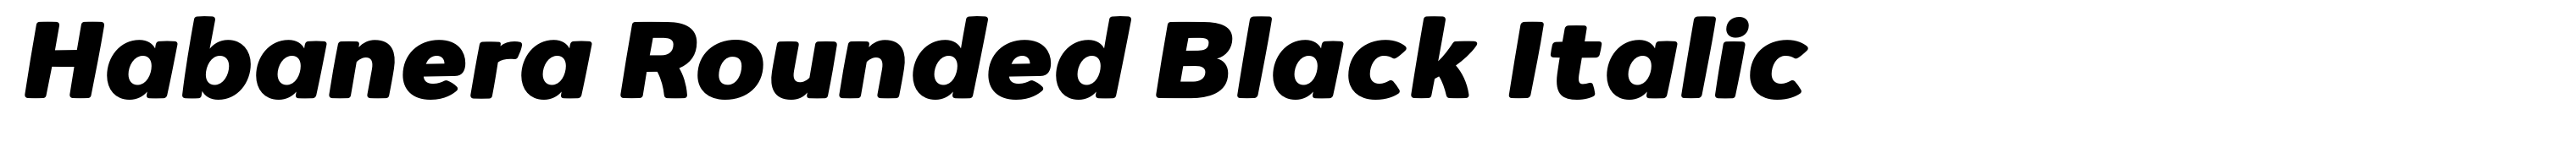 Habanera Rounded Black Italic